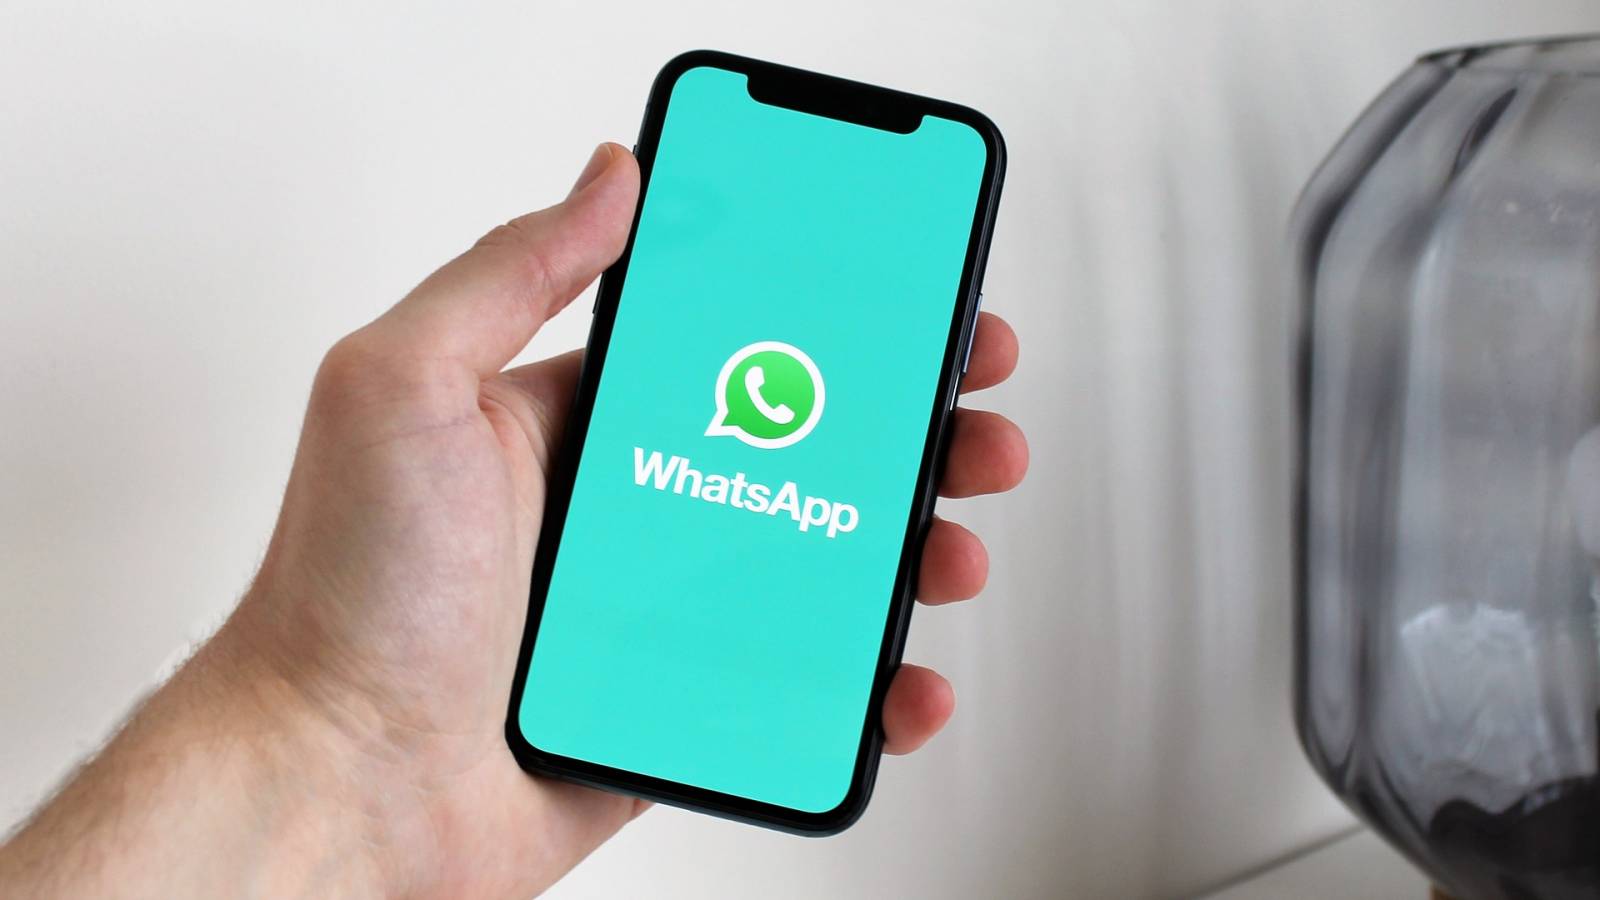 WhatsApp officielle meddelelse viser fremtiden for applikationen Milliarder af mennesker